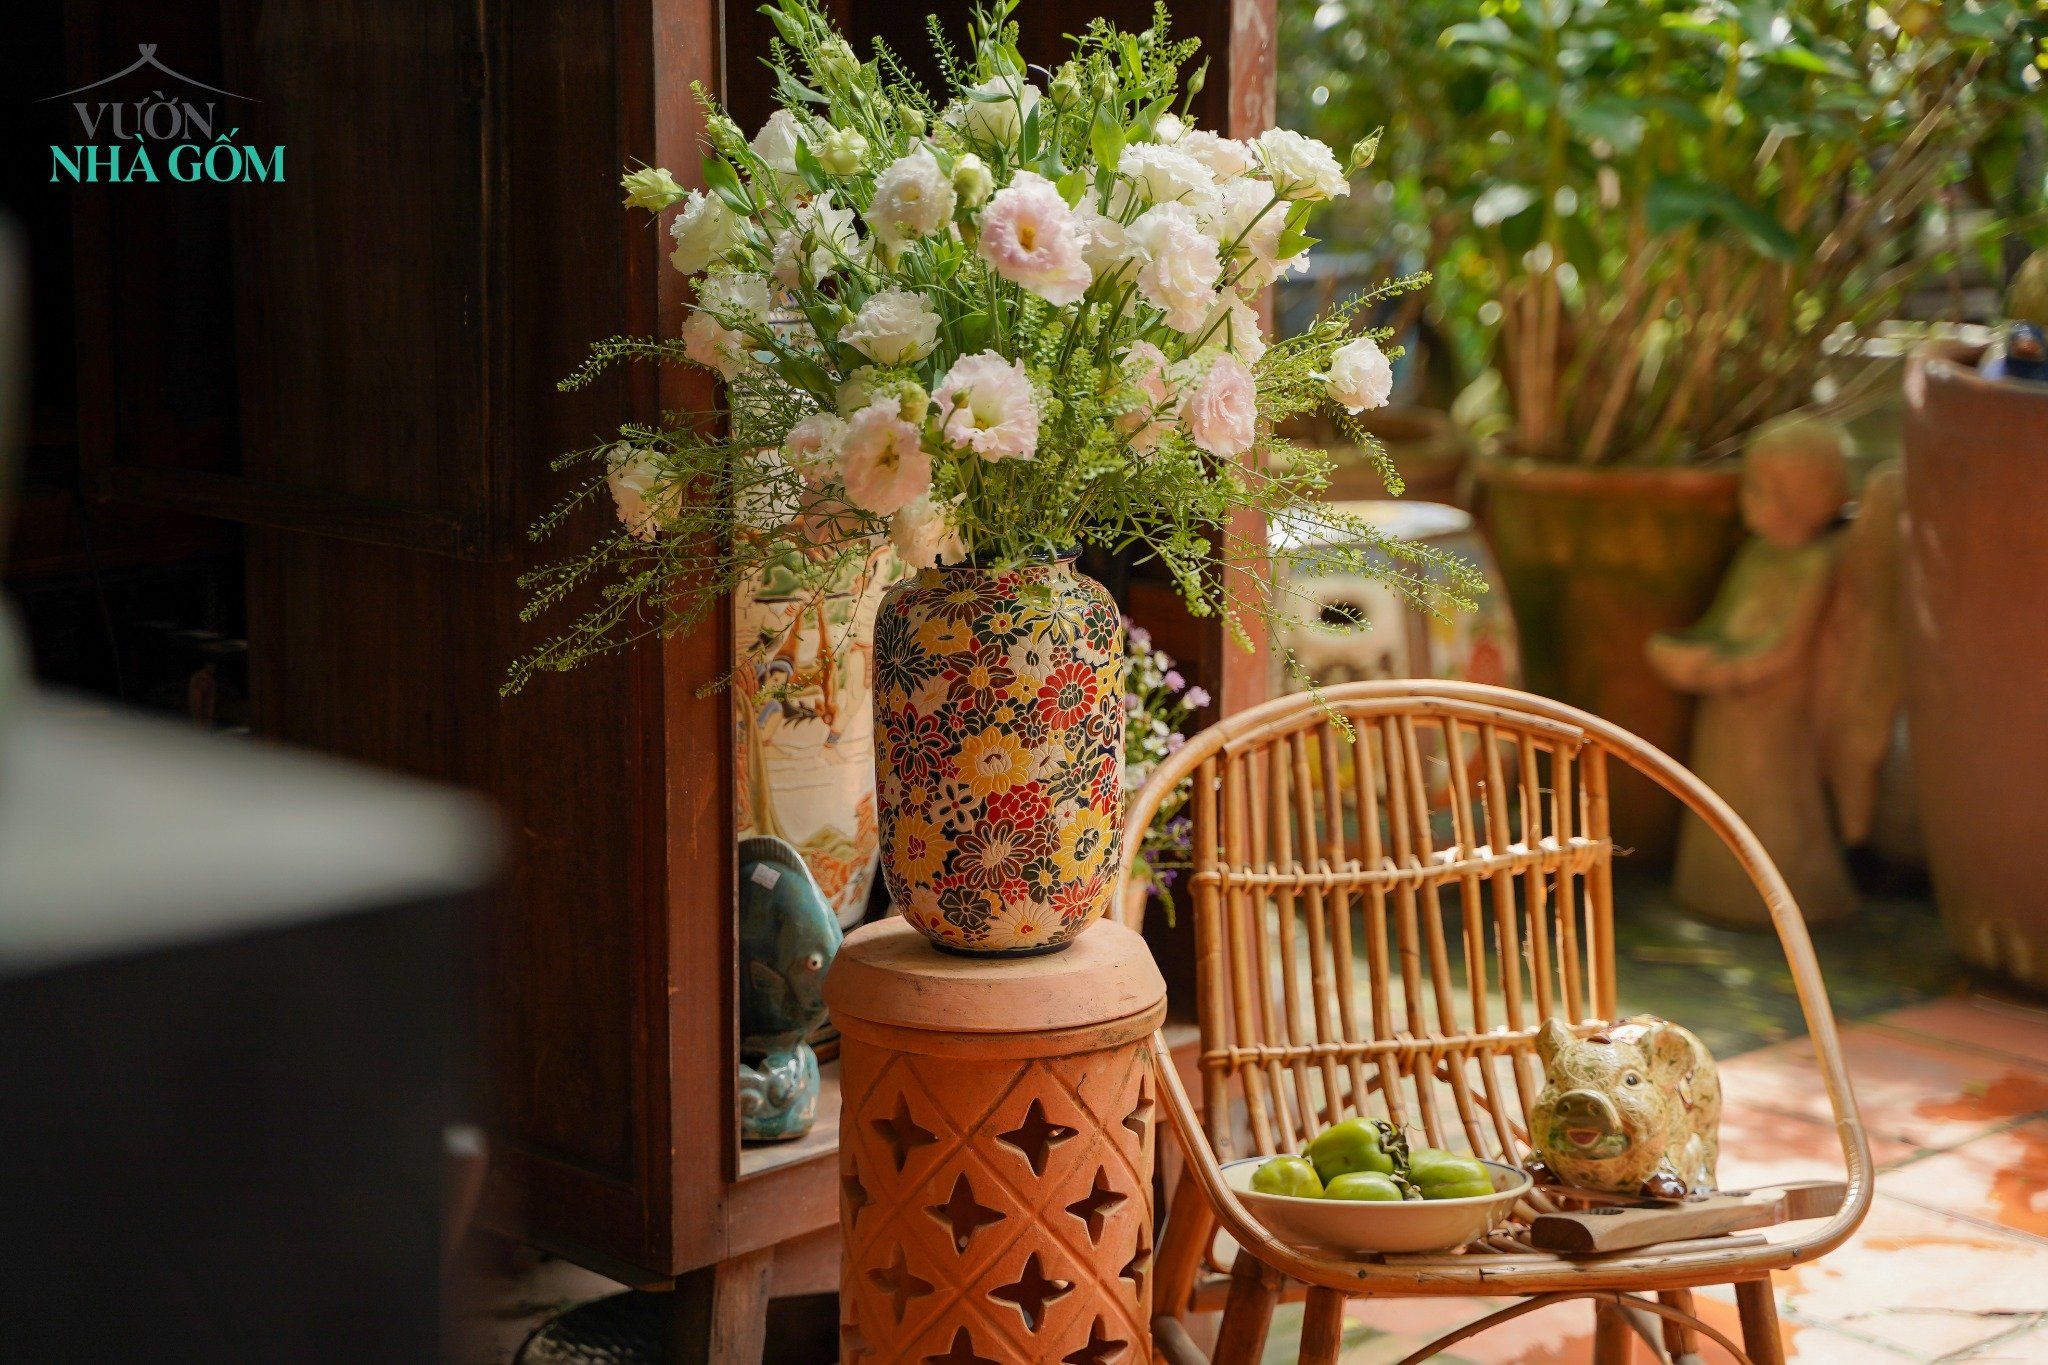  Bình khắc Bách Hoa thủ công, cắm hoa, trang trí Tết, gốm Thủ Biên, C25 x R15cm x M10 cm 